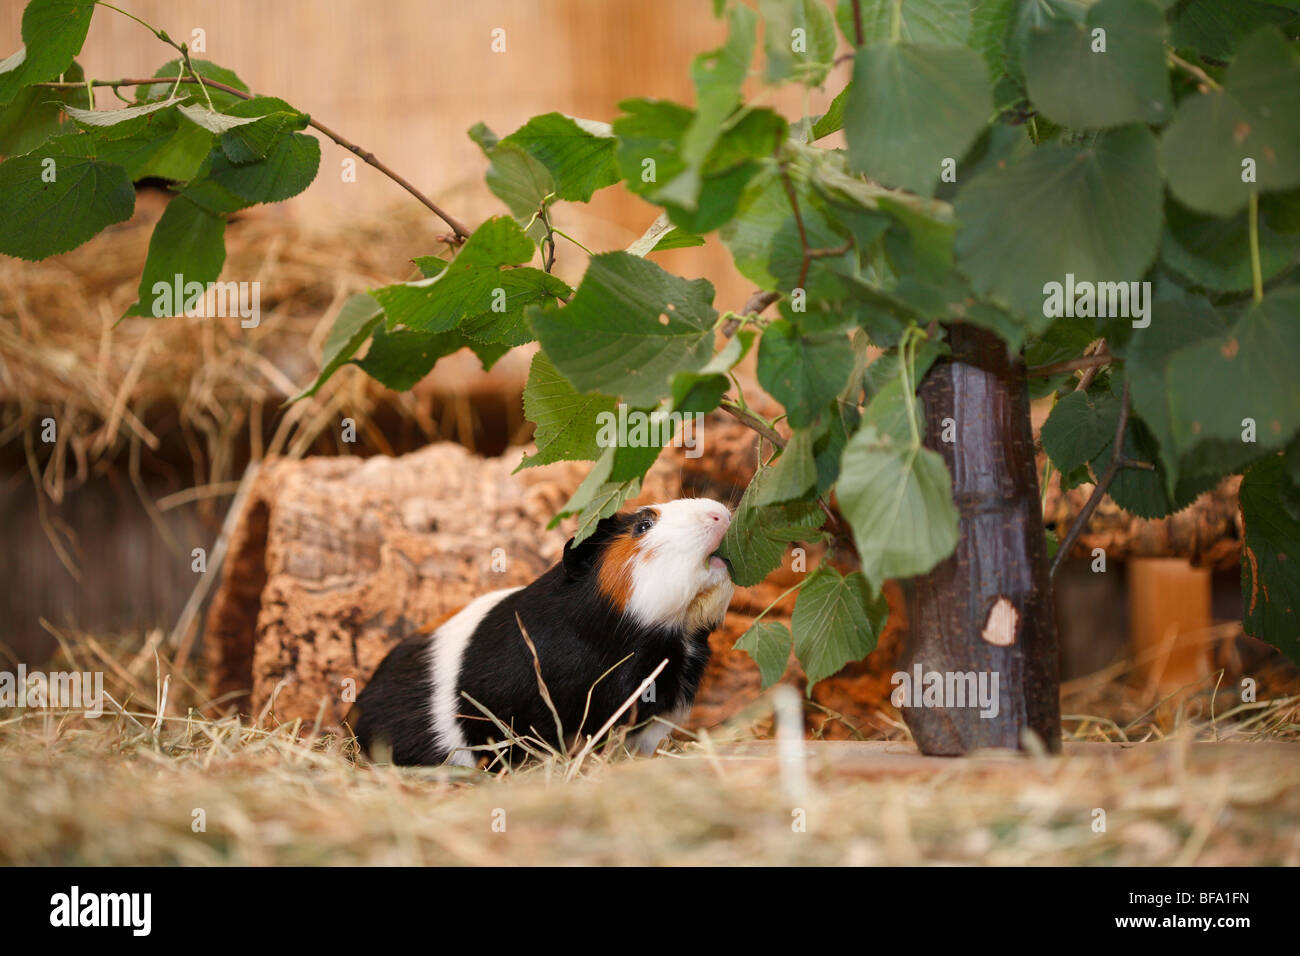 Cavy, el cuy (Cavia spec.), en una jaula, alimentándose de hojas Foto de stock